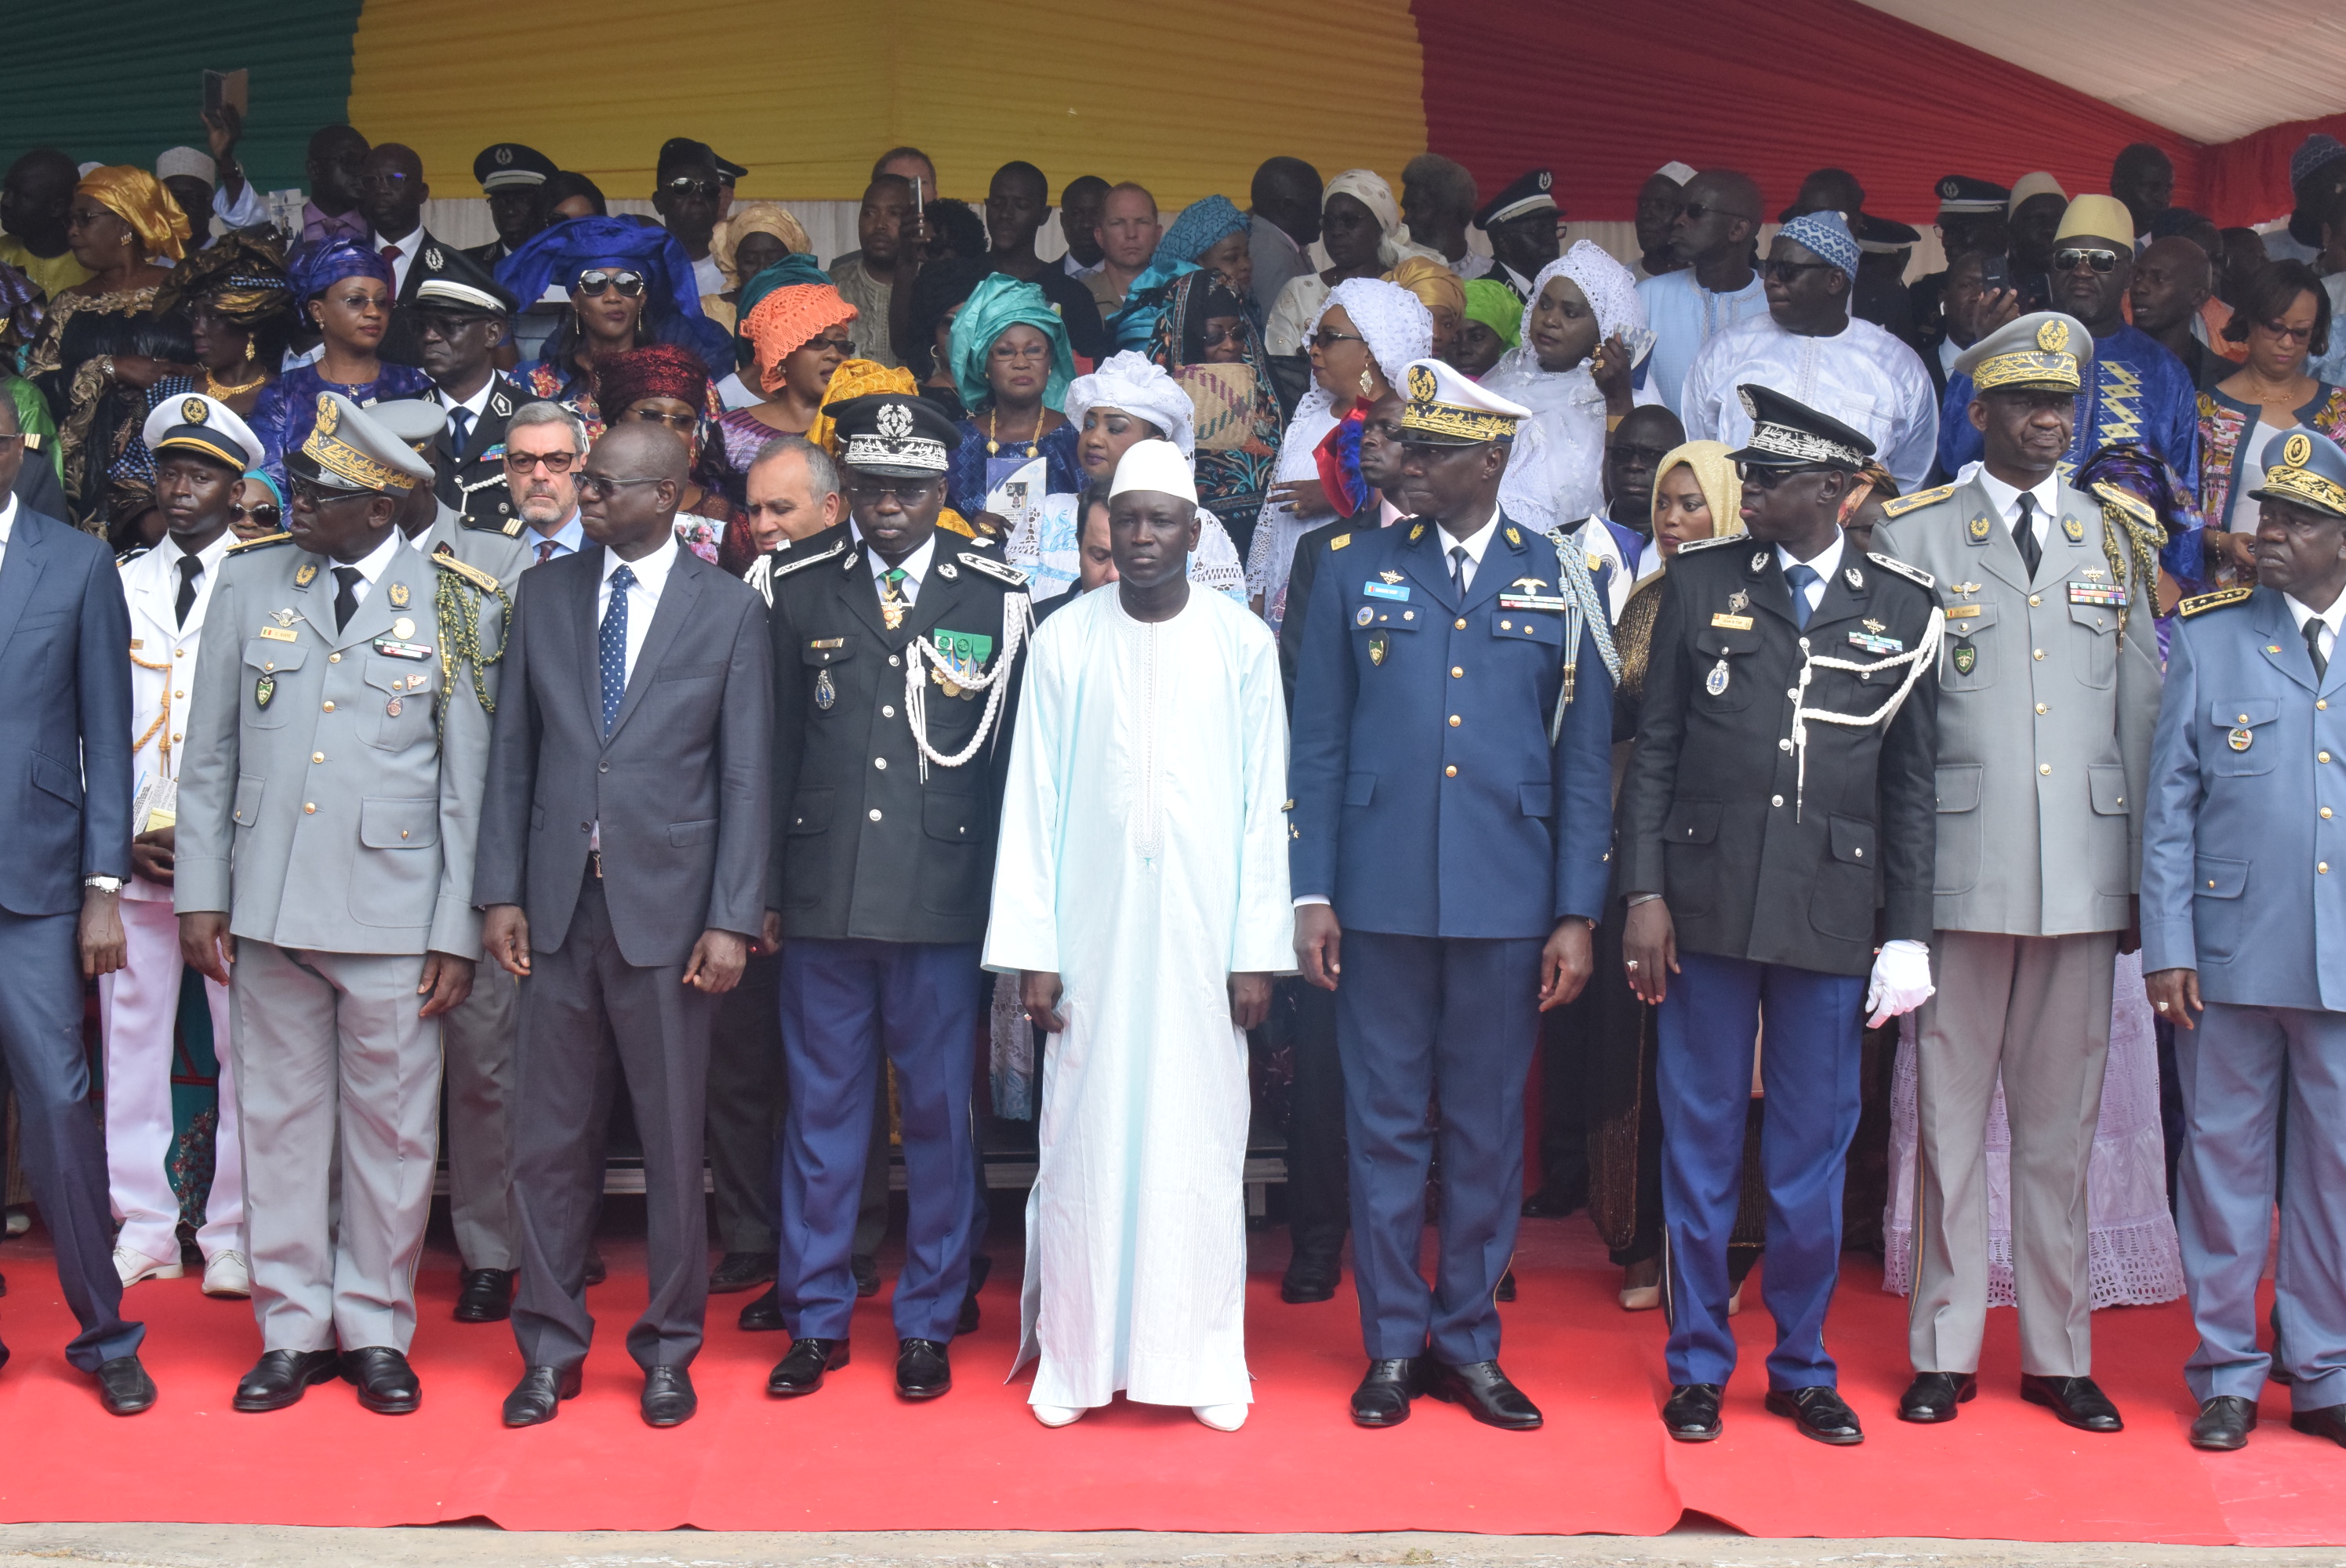 Installation de Cheikh Sène dans ses fonctions de nouveau Haut Commandant de la Gendarmerie nationale et Directeur de la justice militaire